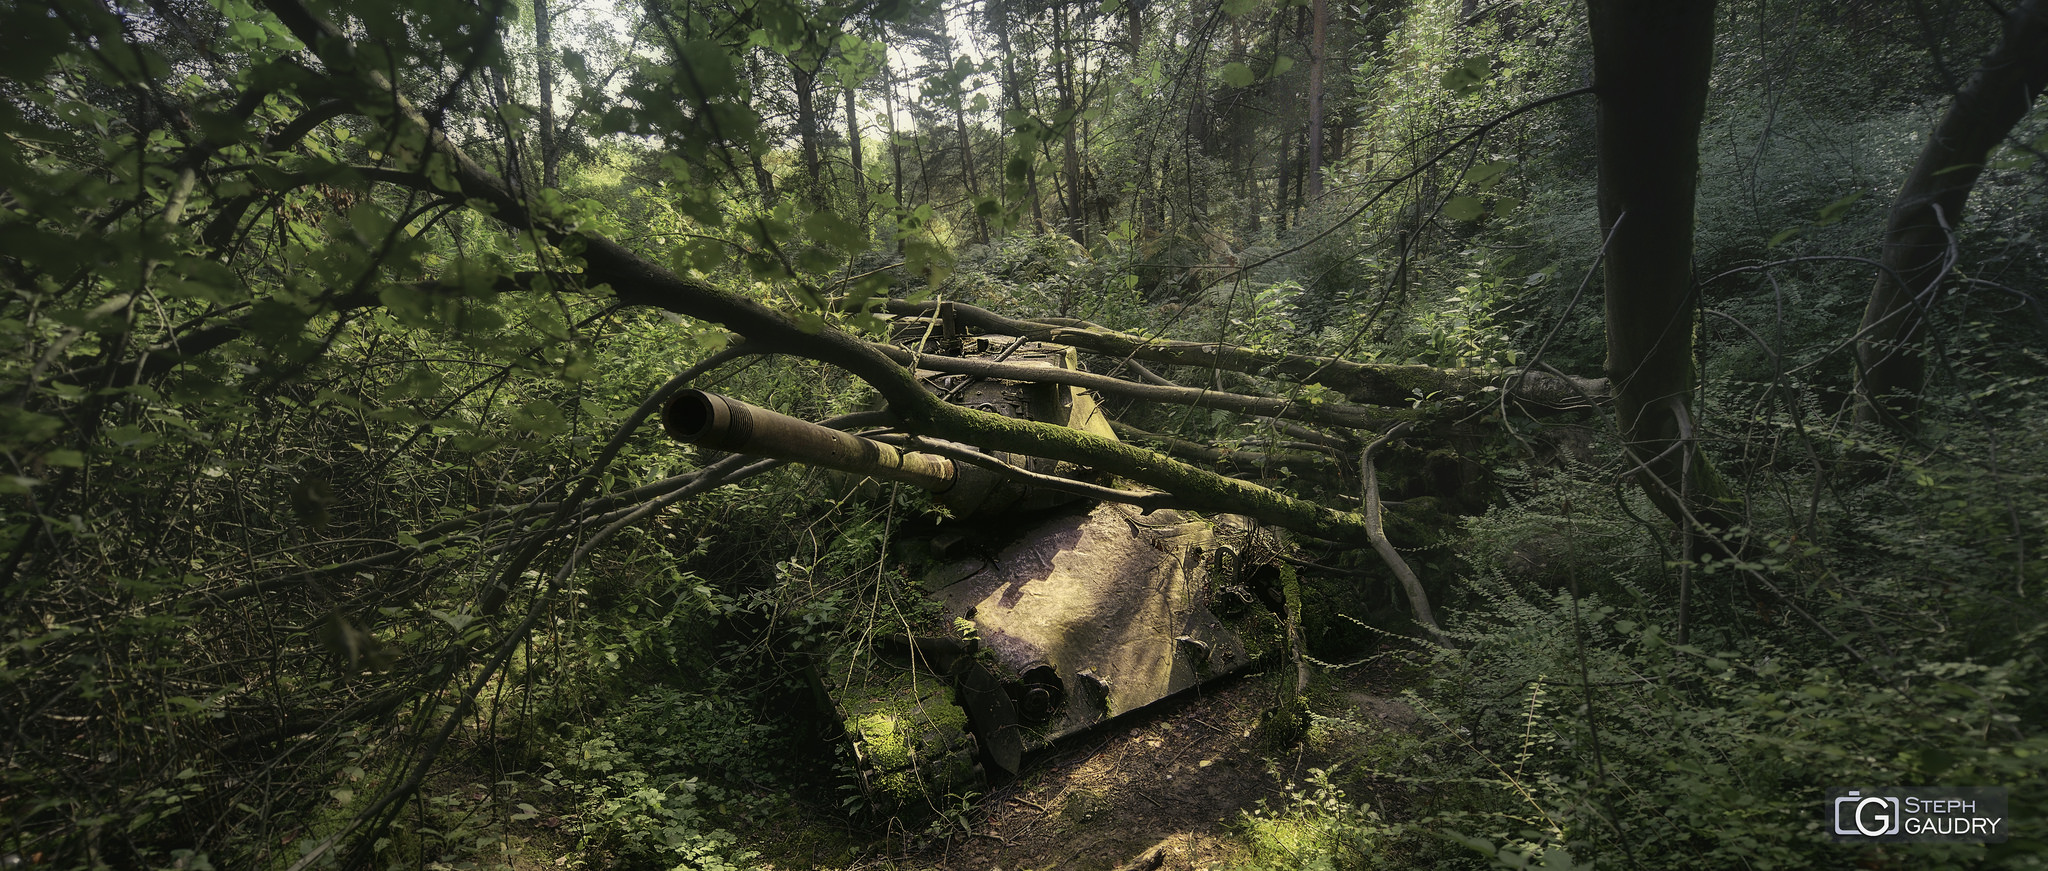 Tank abandonné dans la forêt [Cliquez pour lancer le diaporama]